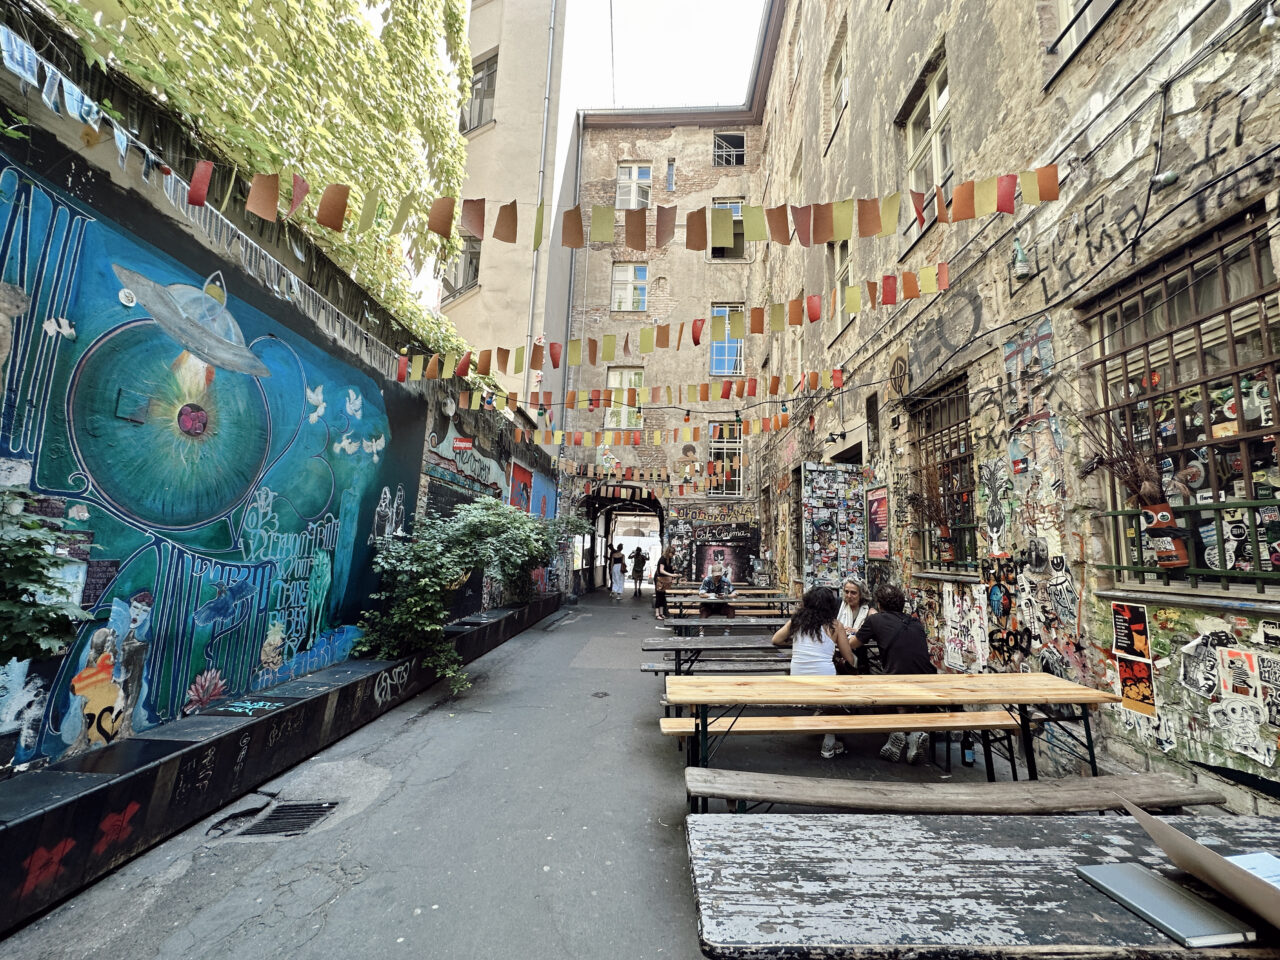 En bakgård med nedtaggede vegger og kunstverk. Det er satt opp benker hvor folk sitter. Foto